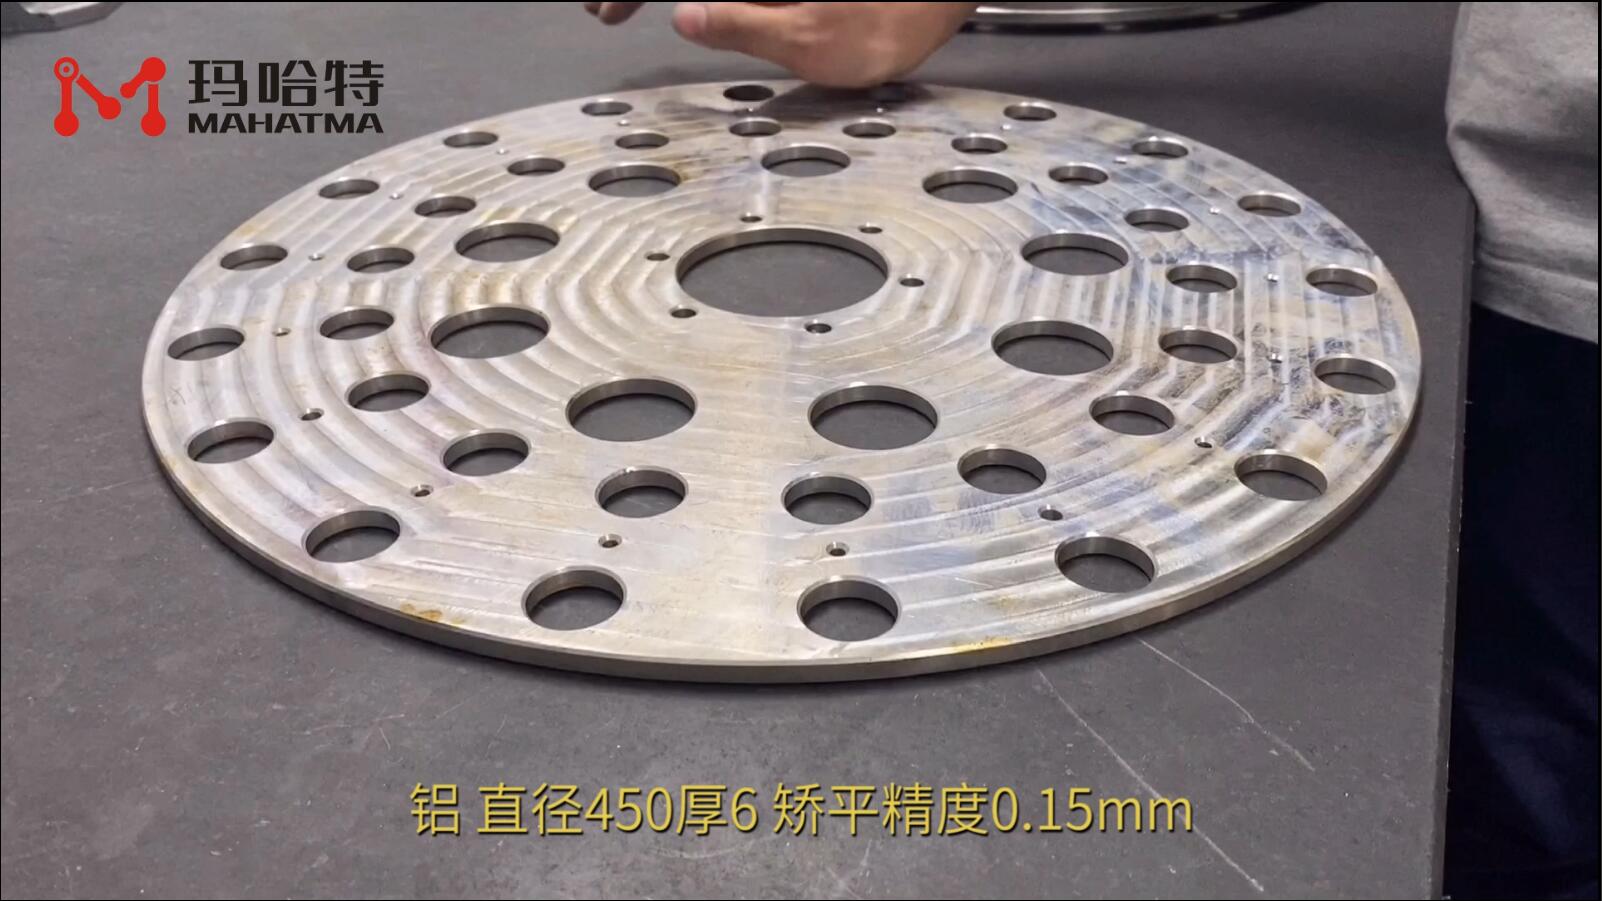  铝 MHT80-800 圆形 直径450厚6 矫平精度0.15mm